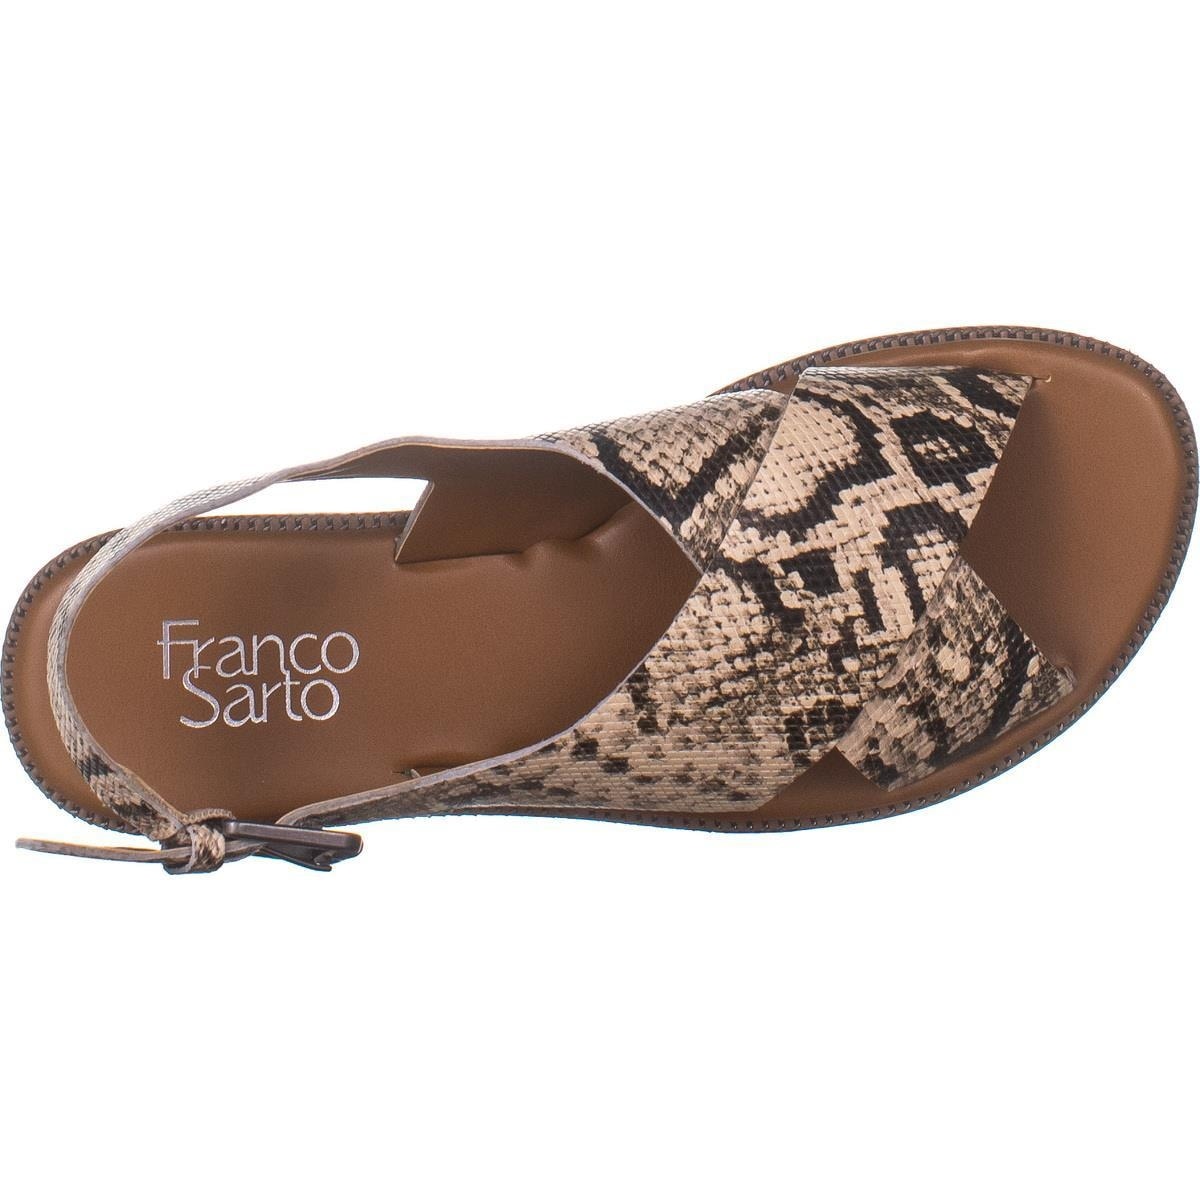 franco sarto kayleigh slingback leather sandal